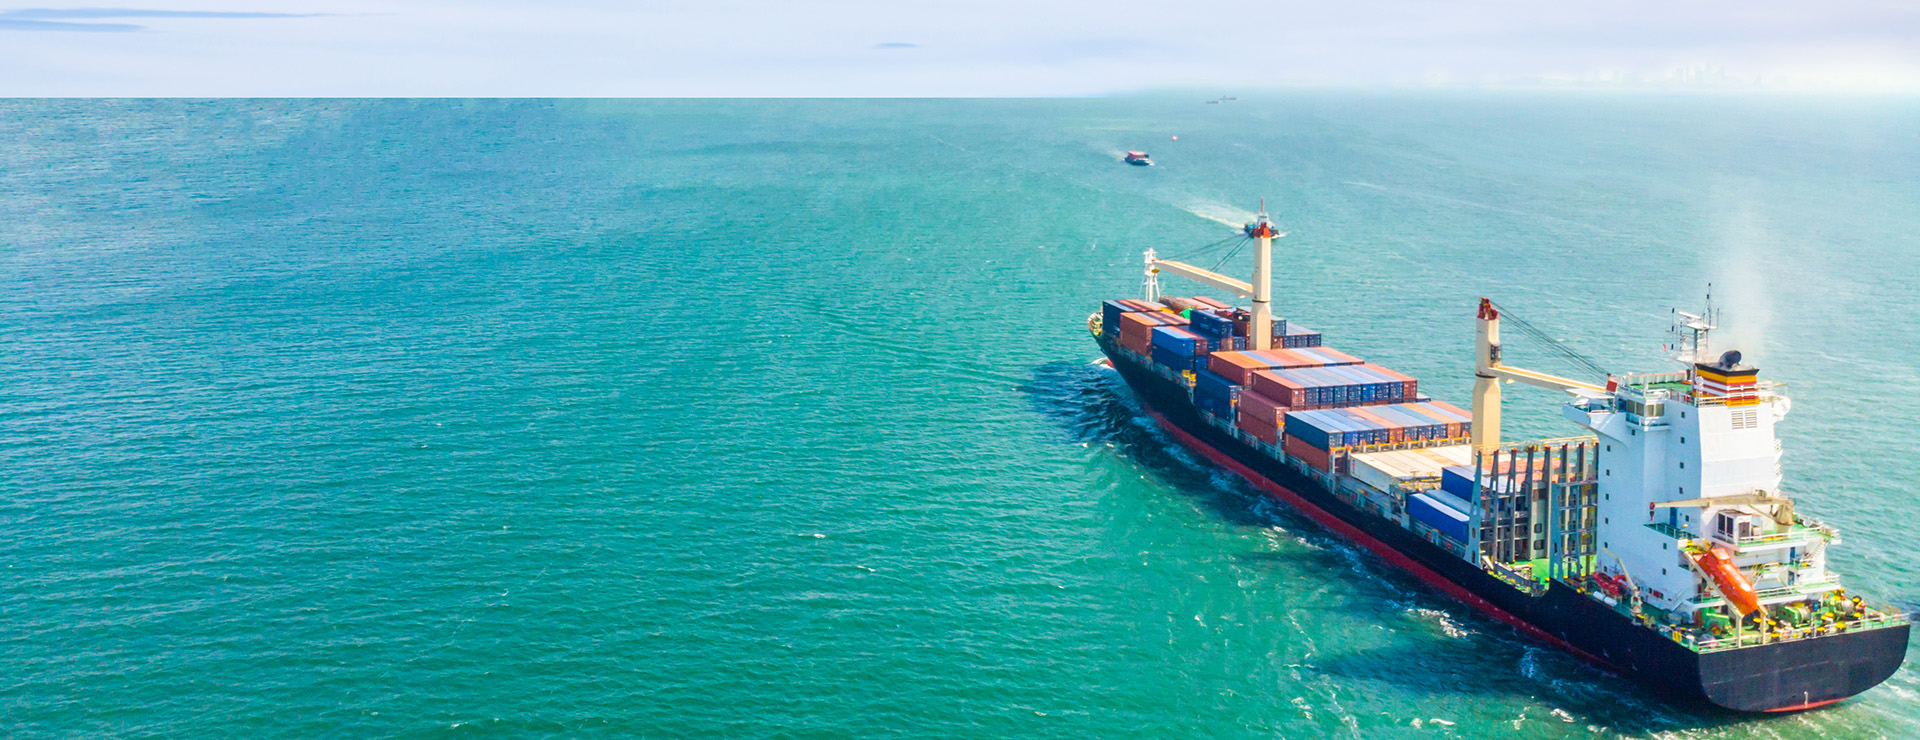 Luftfoto af fragtskibe, der sejler midt i havet, transporteres container til havnen.Import eksport og shipping business logistik og transport af International med skib